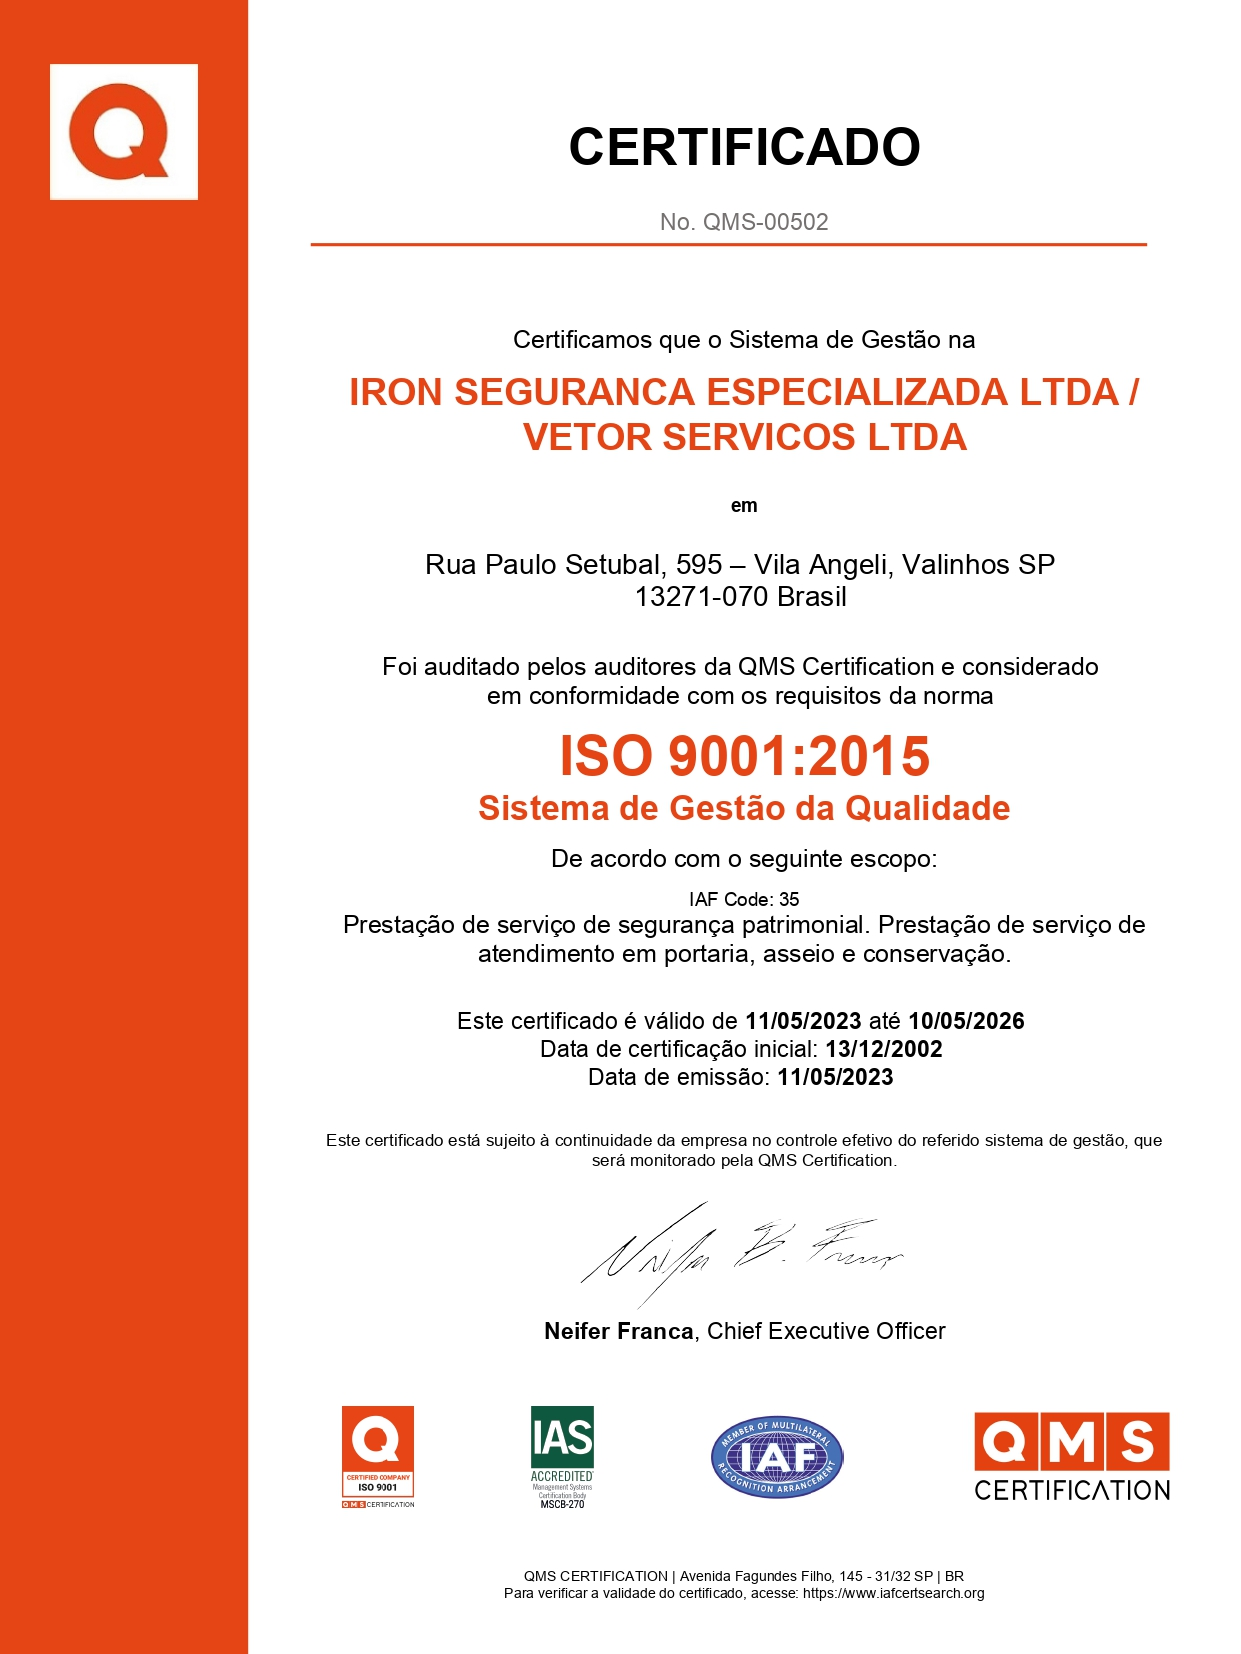 Certificado ISO Iron Segurança